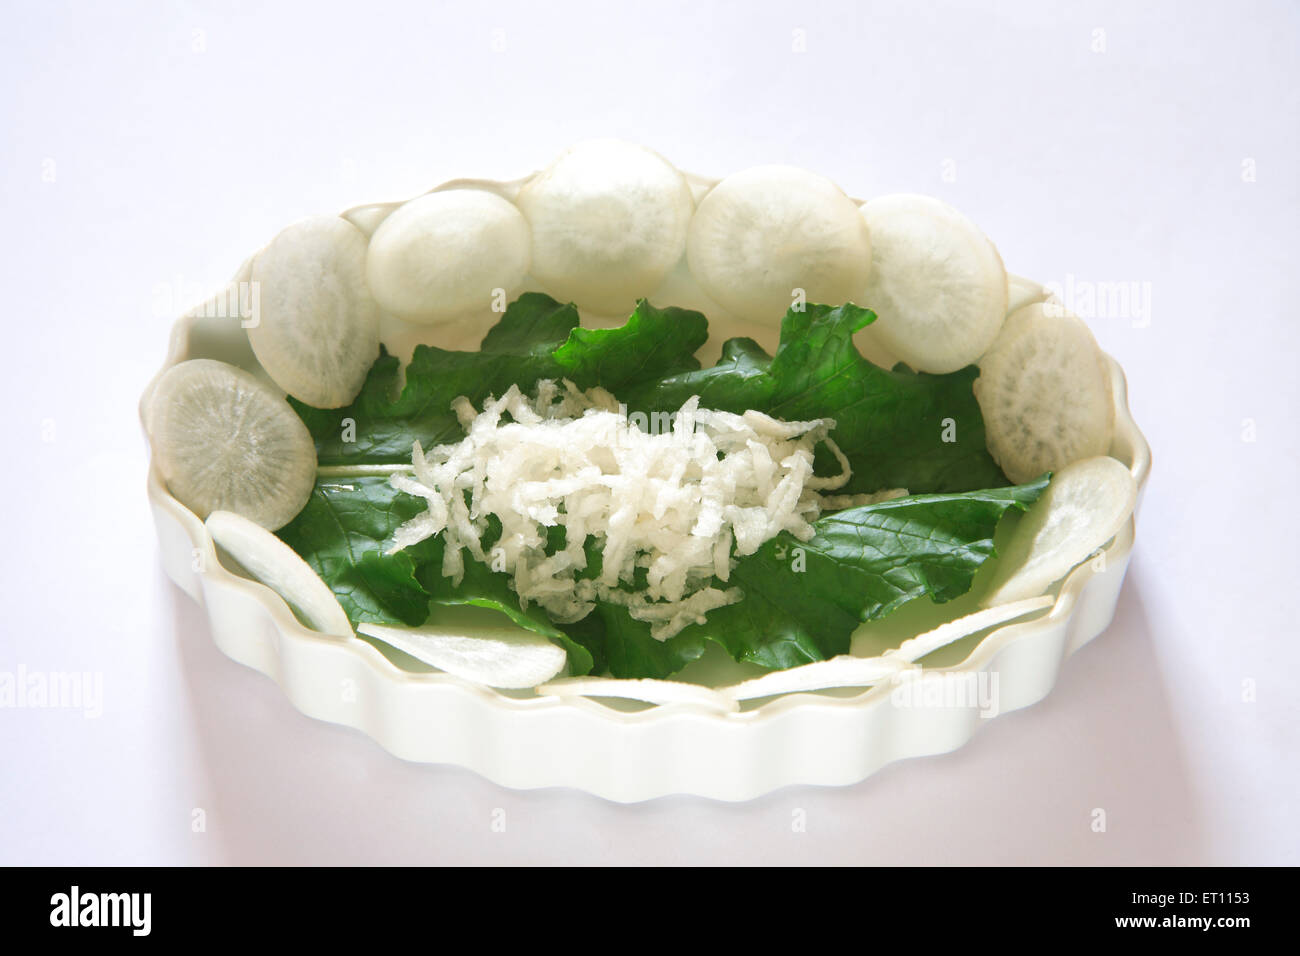 Légumes verts ; ronde tranches de radis muli Raphanus sativa avec des feuilles vertes sur fond blanc Banque D'Images